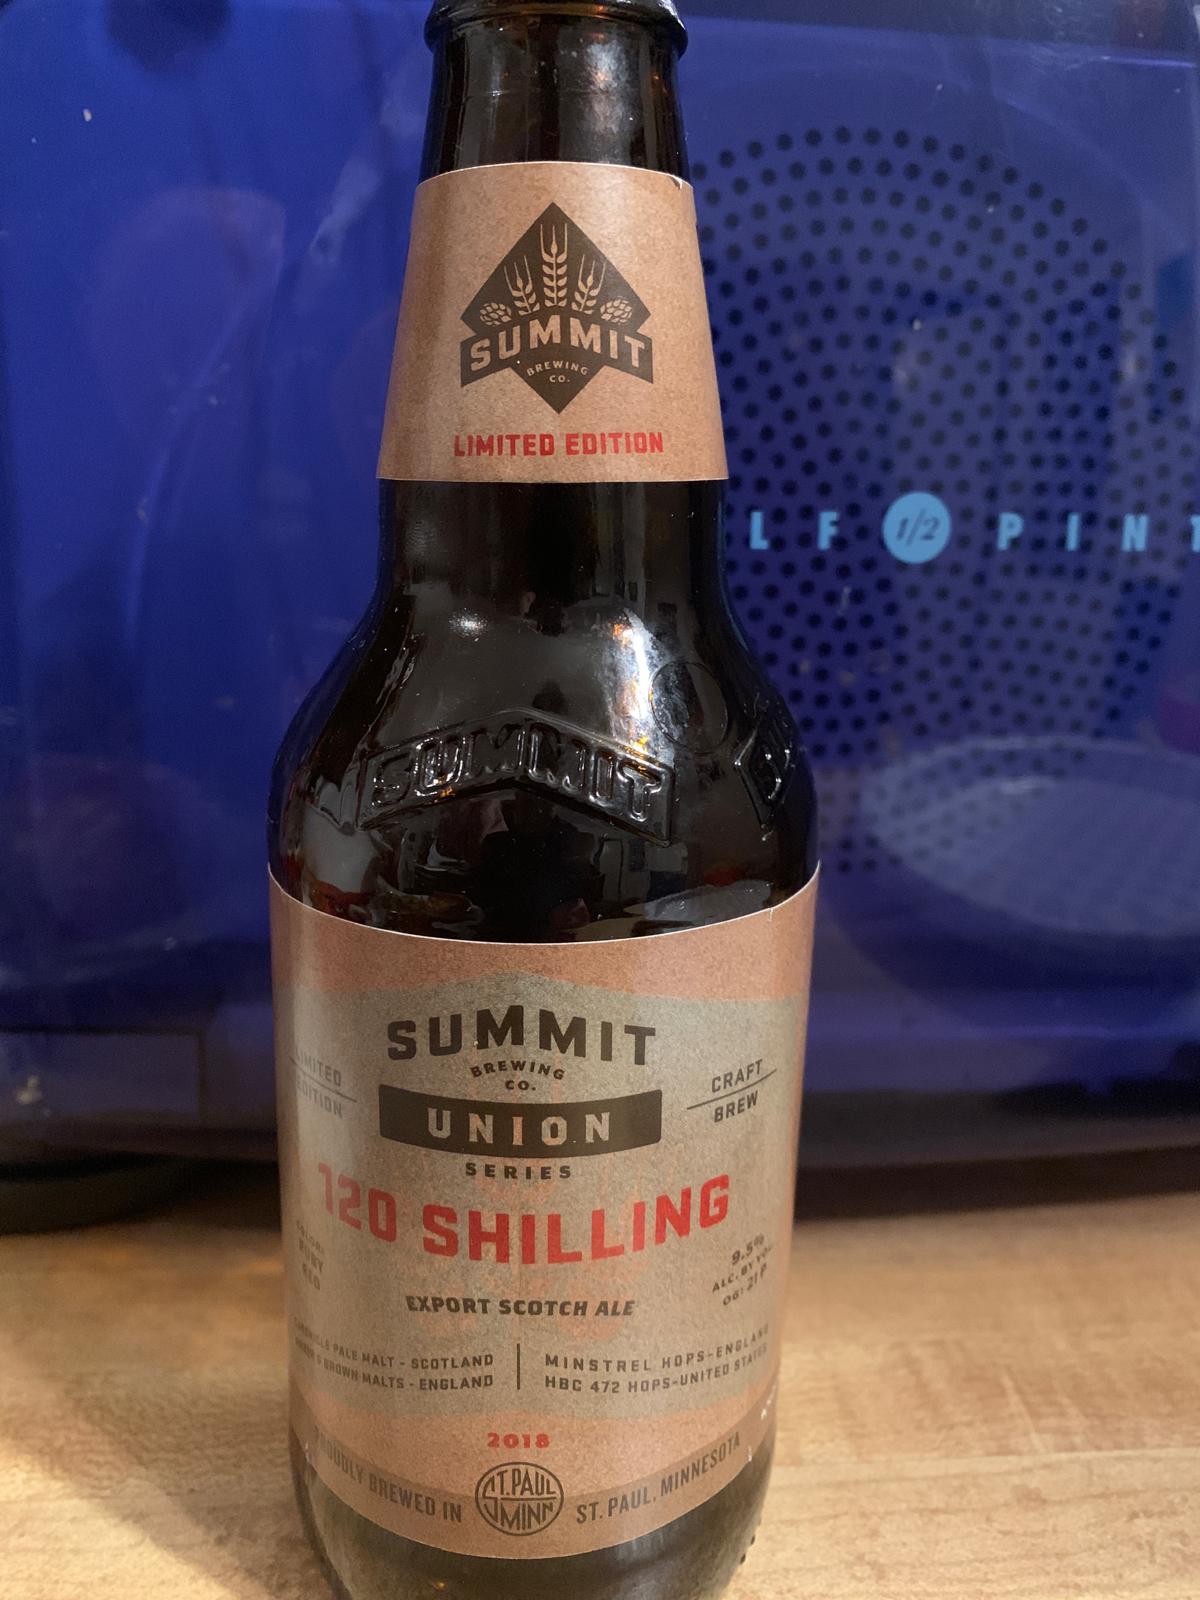 Union Series #7: 120 Shilling Export Scotch Ale